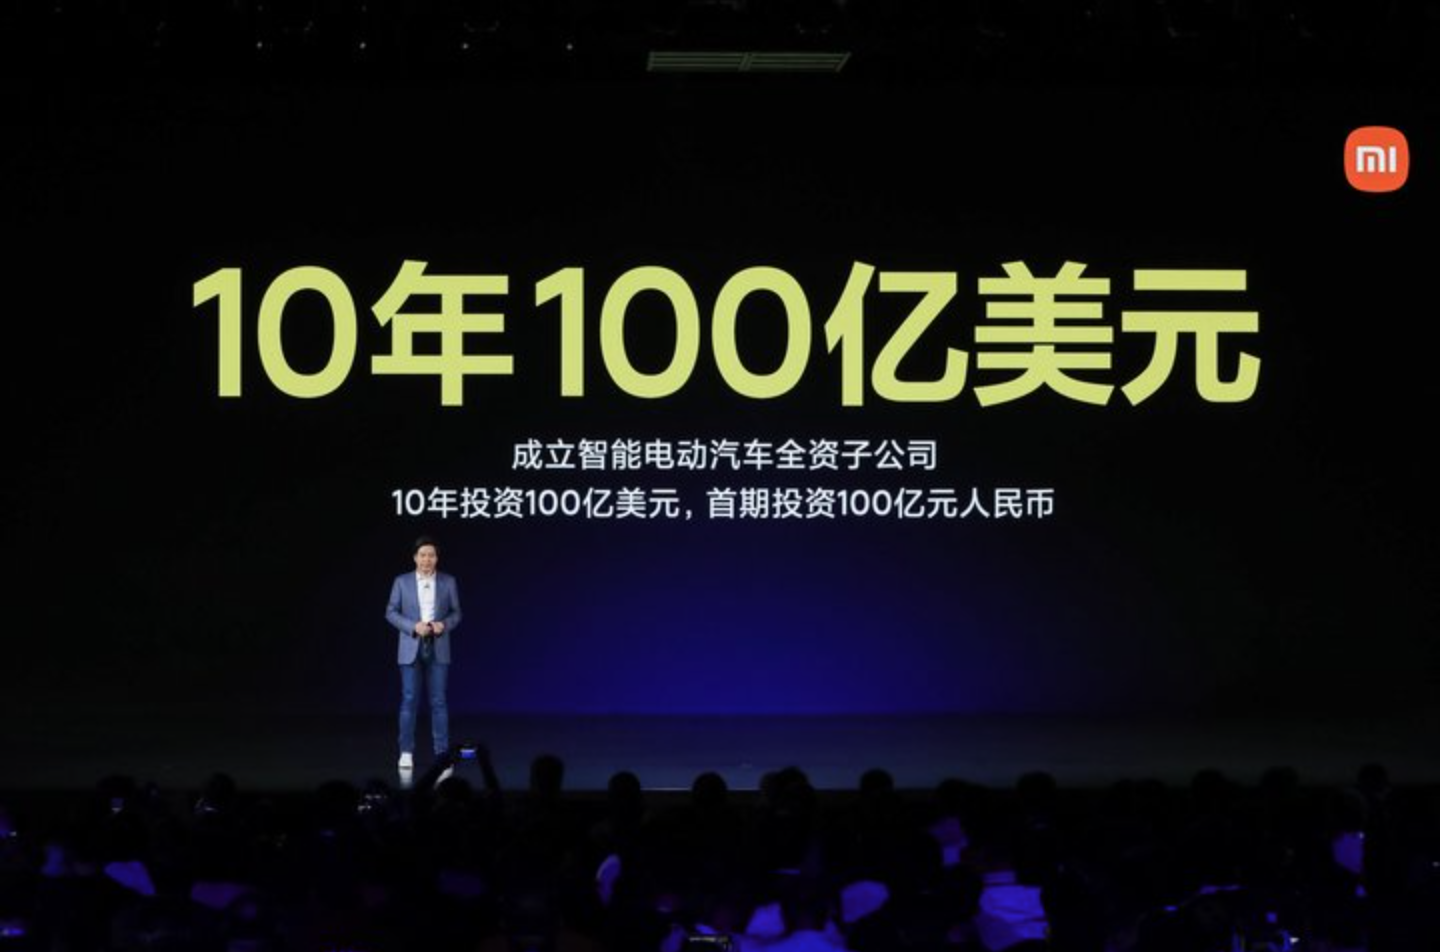 6t - Proprio ora, Lei Jun ha svelato il segreto delle auto Xiaomi: a partire da 100.000 yuan, rilasciate in 3 anni